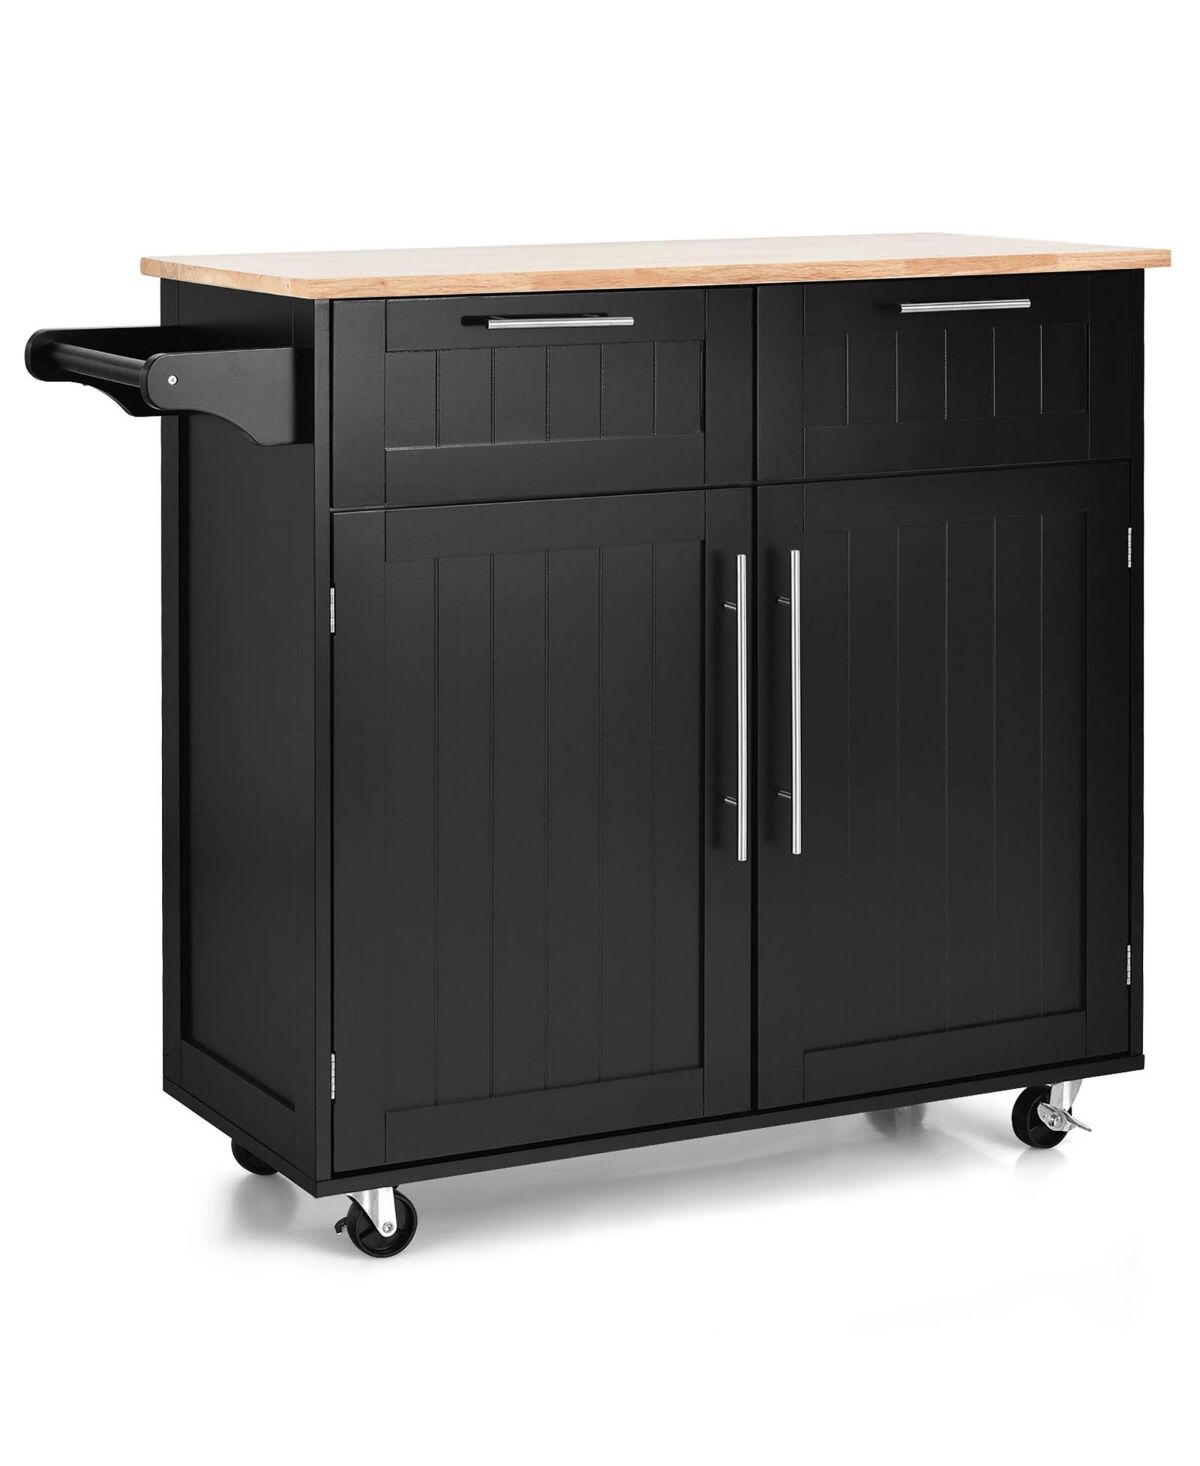 Costway Rolling Kitchen Cart Island Heavy Duty Storage Trolley Cabinet - Black